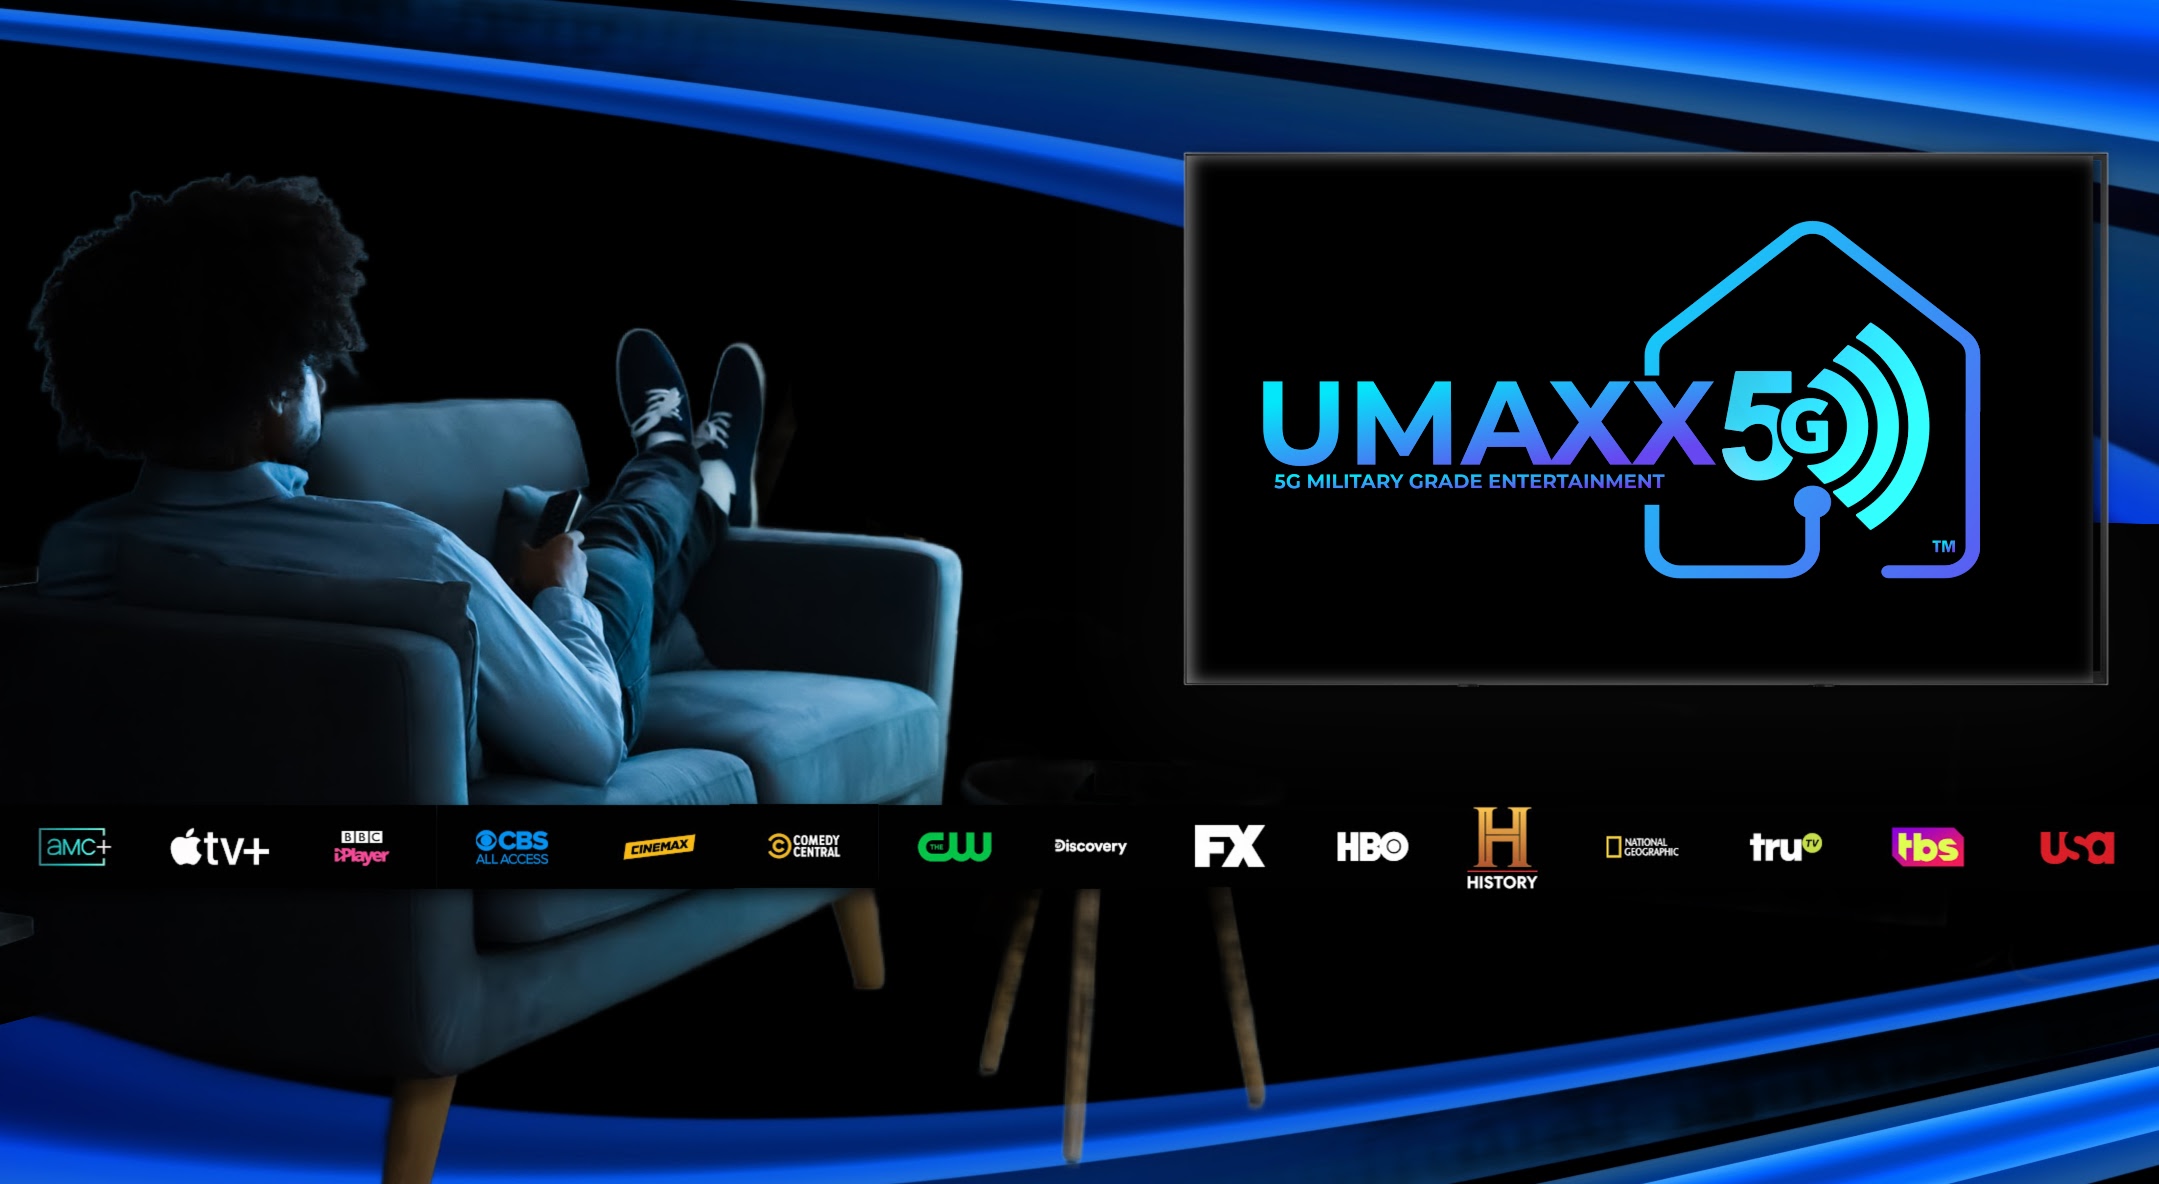 The worlds first 5G TV service | UMAXX.TV